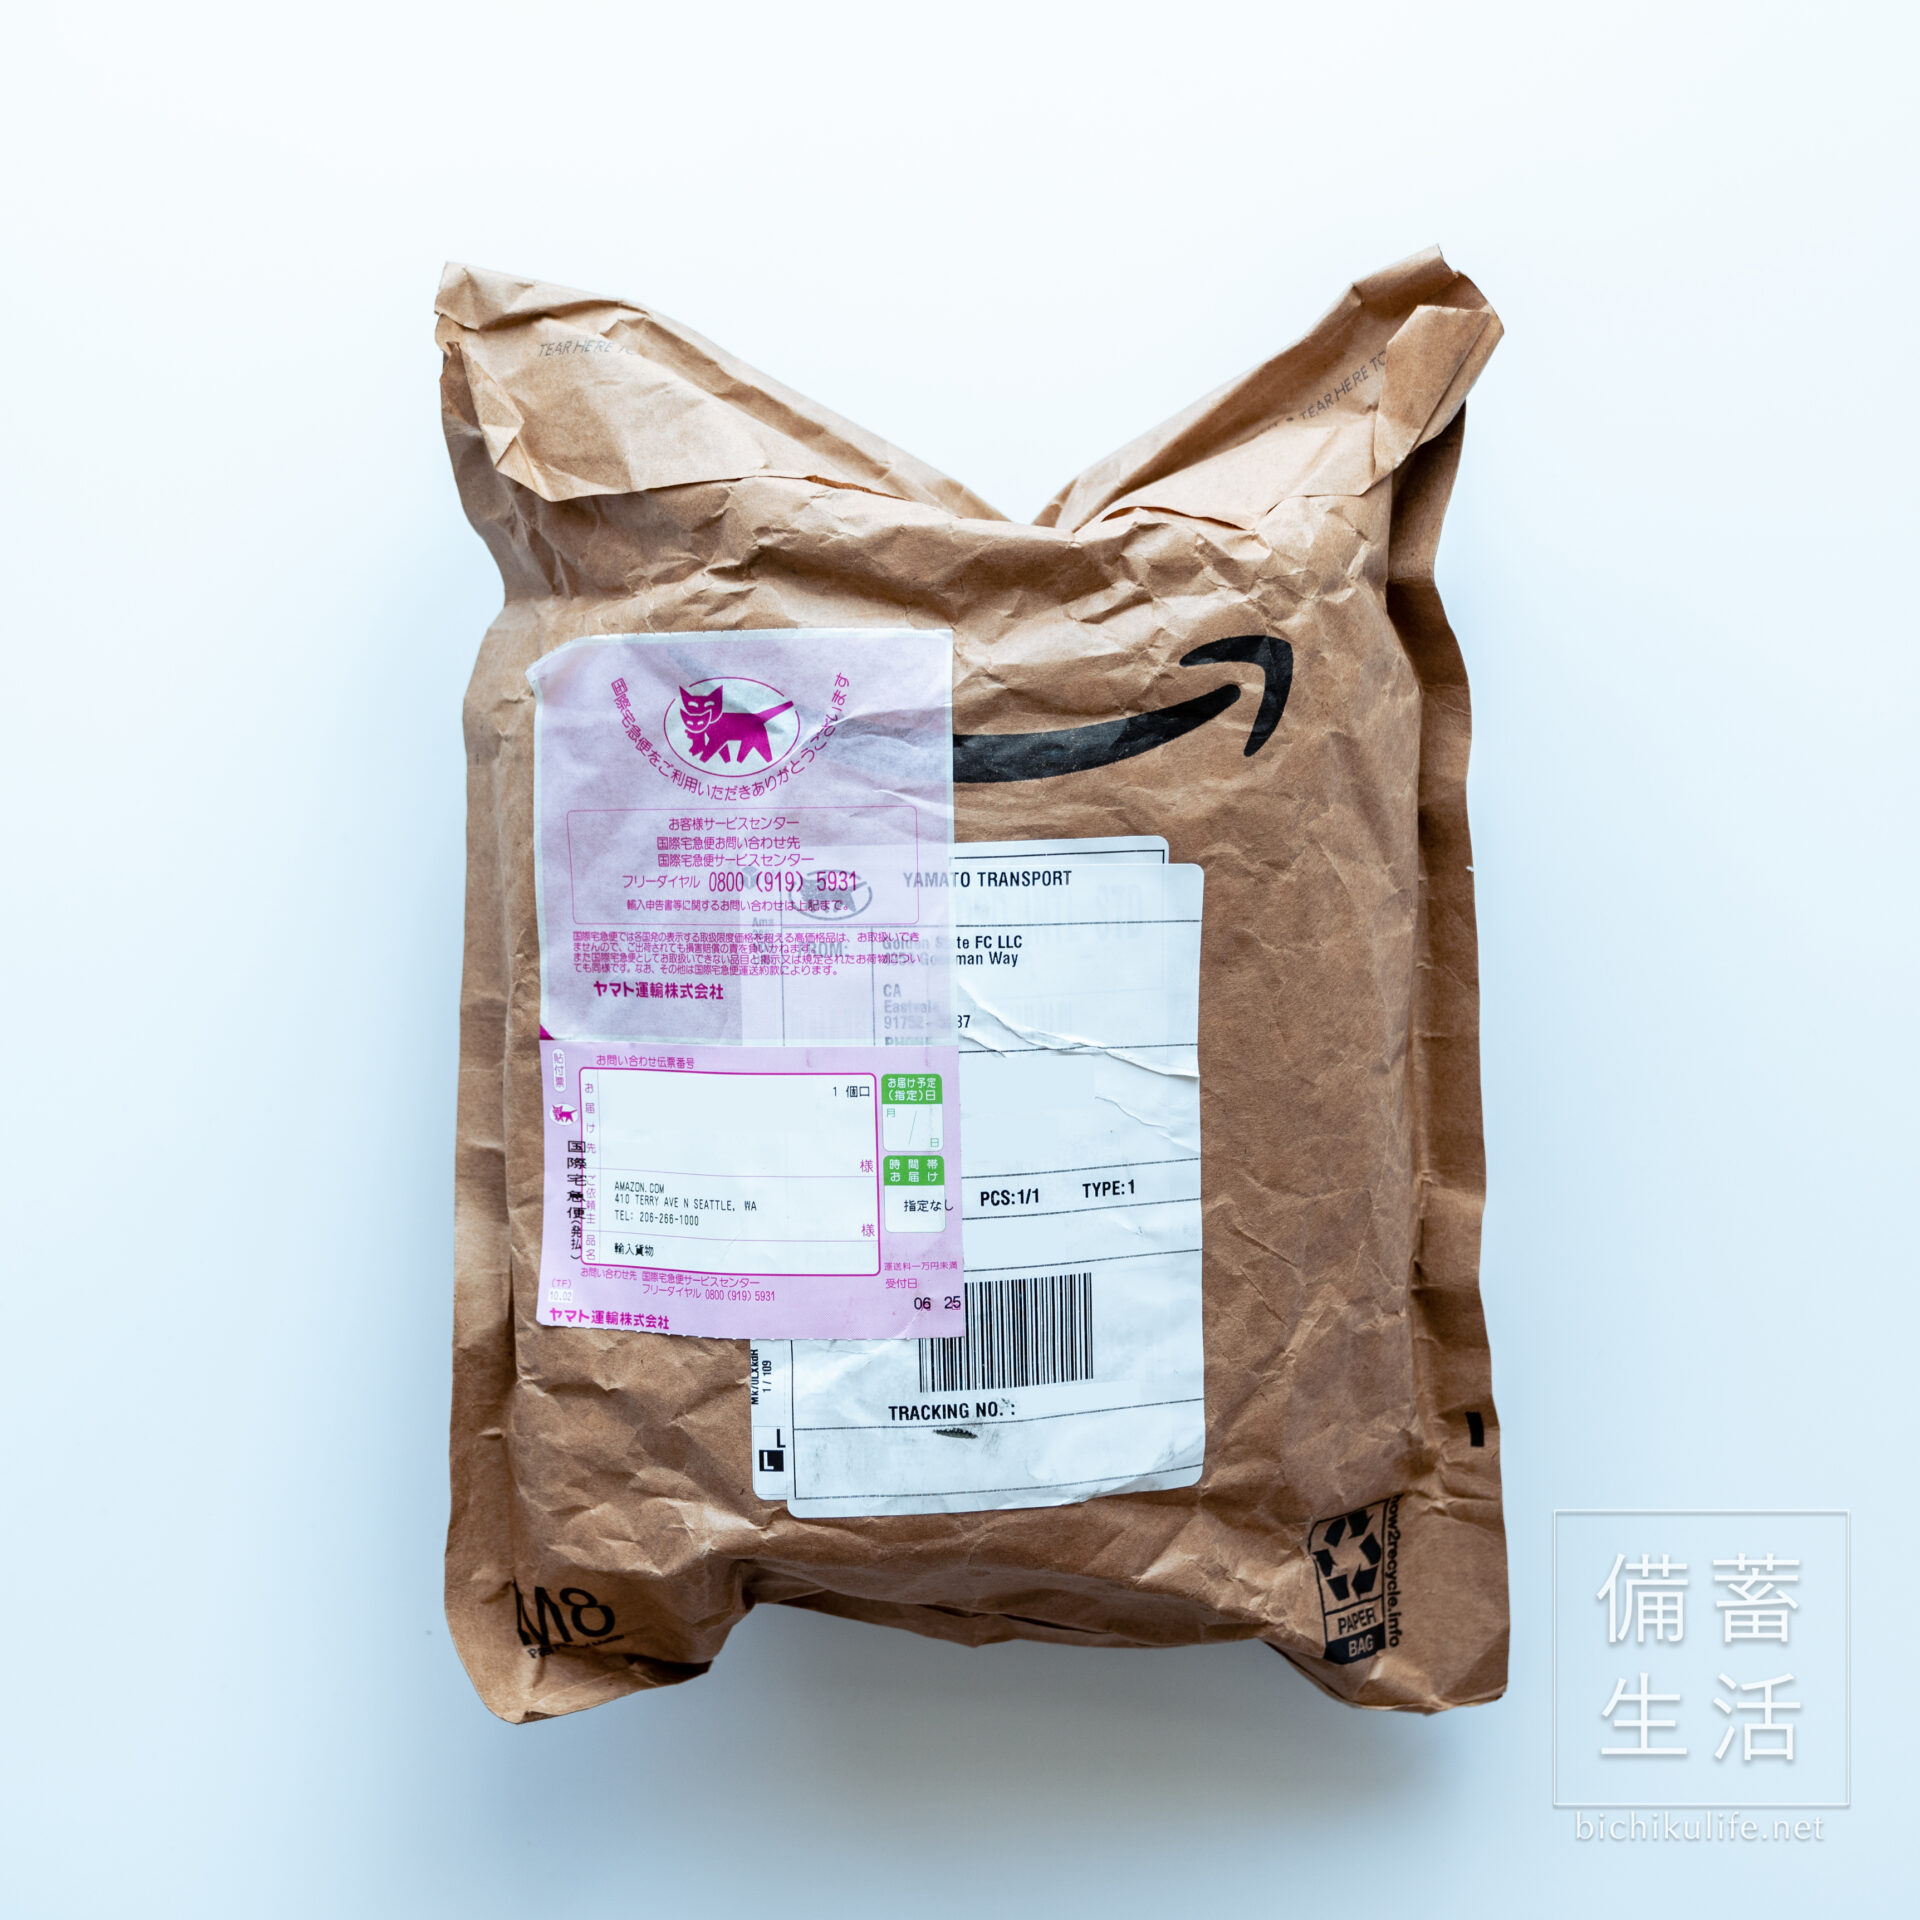 Amazon.com（アメリカ）の購入方法・個人輸入する方法 商品の到着